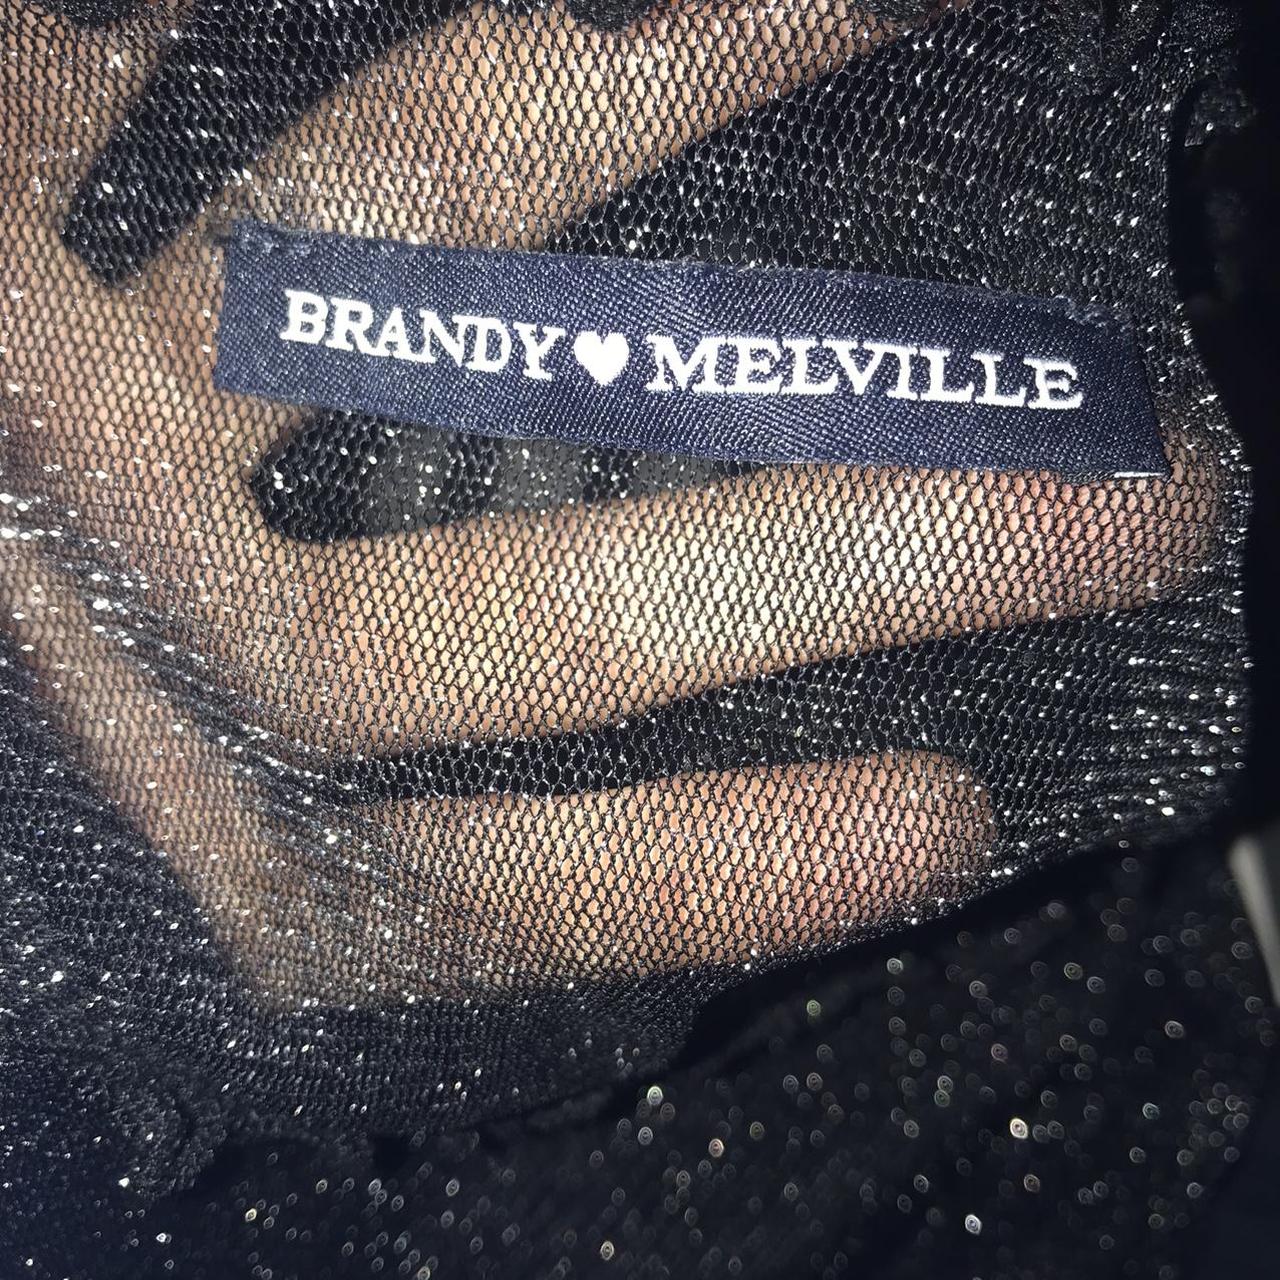 Brandy Melville Black/Glitter Sparkle mesh